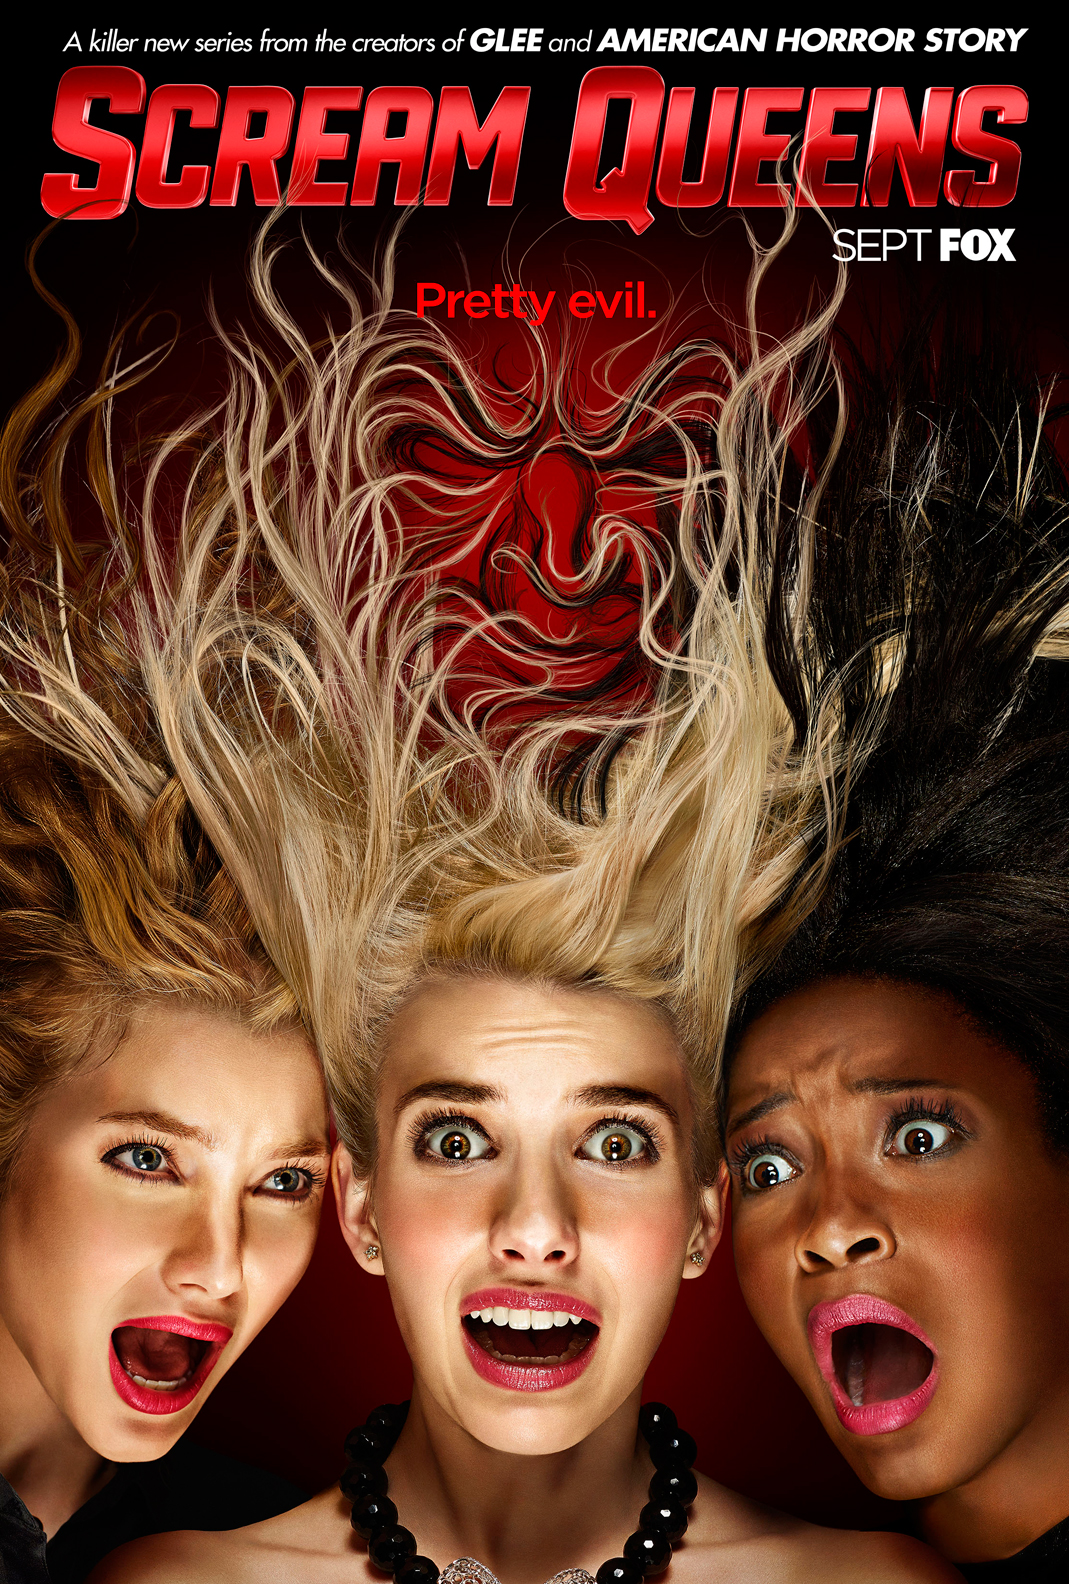 Scream Queens (season 1) - Wikipedia